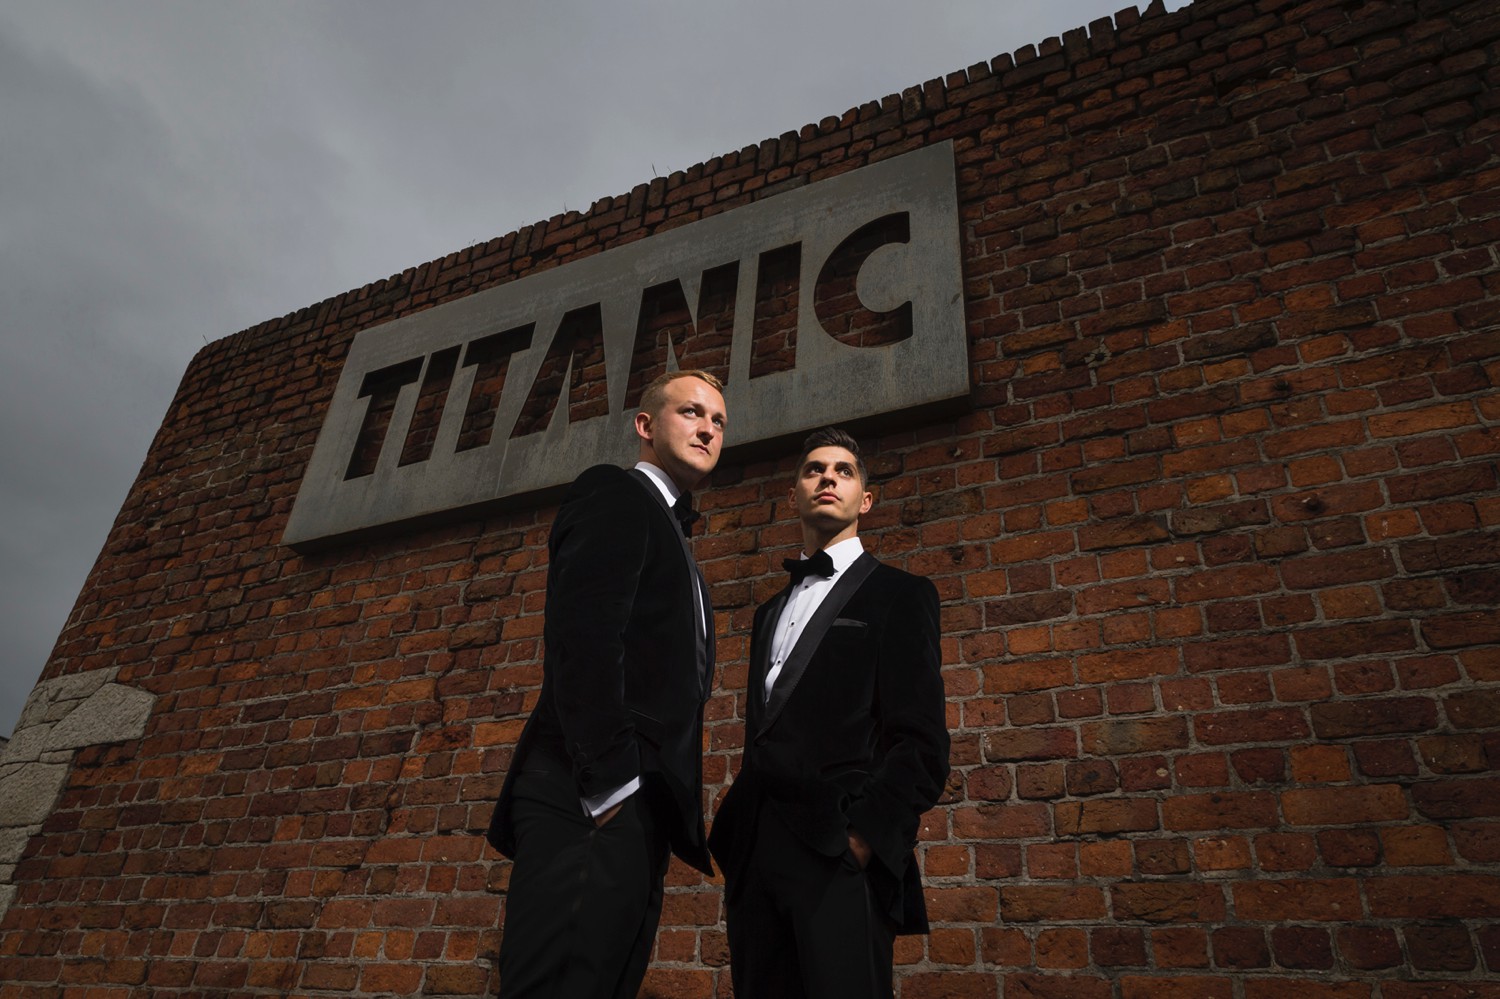 Titanic Hotel Wedding Photography